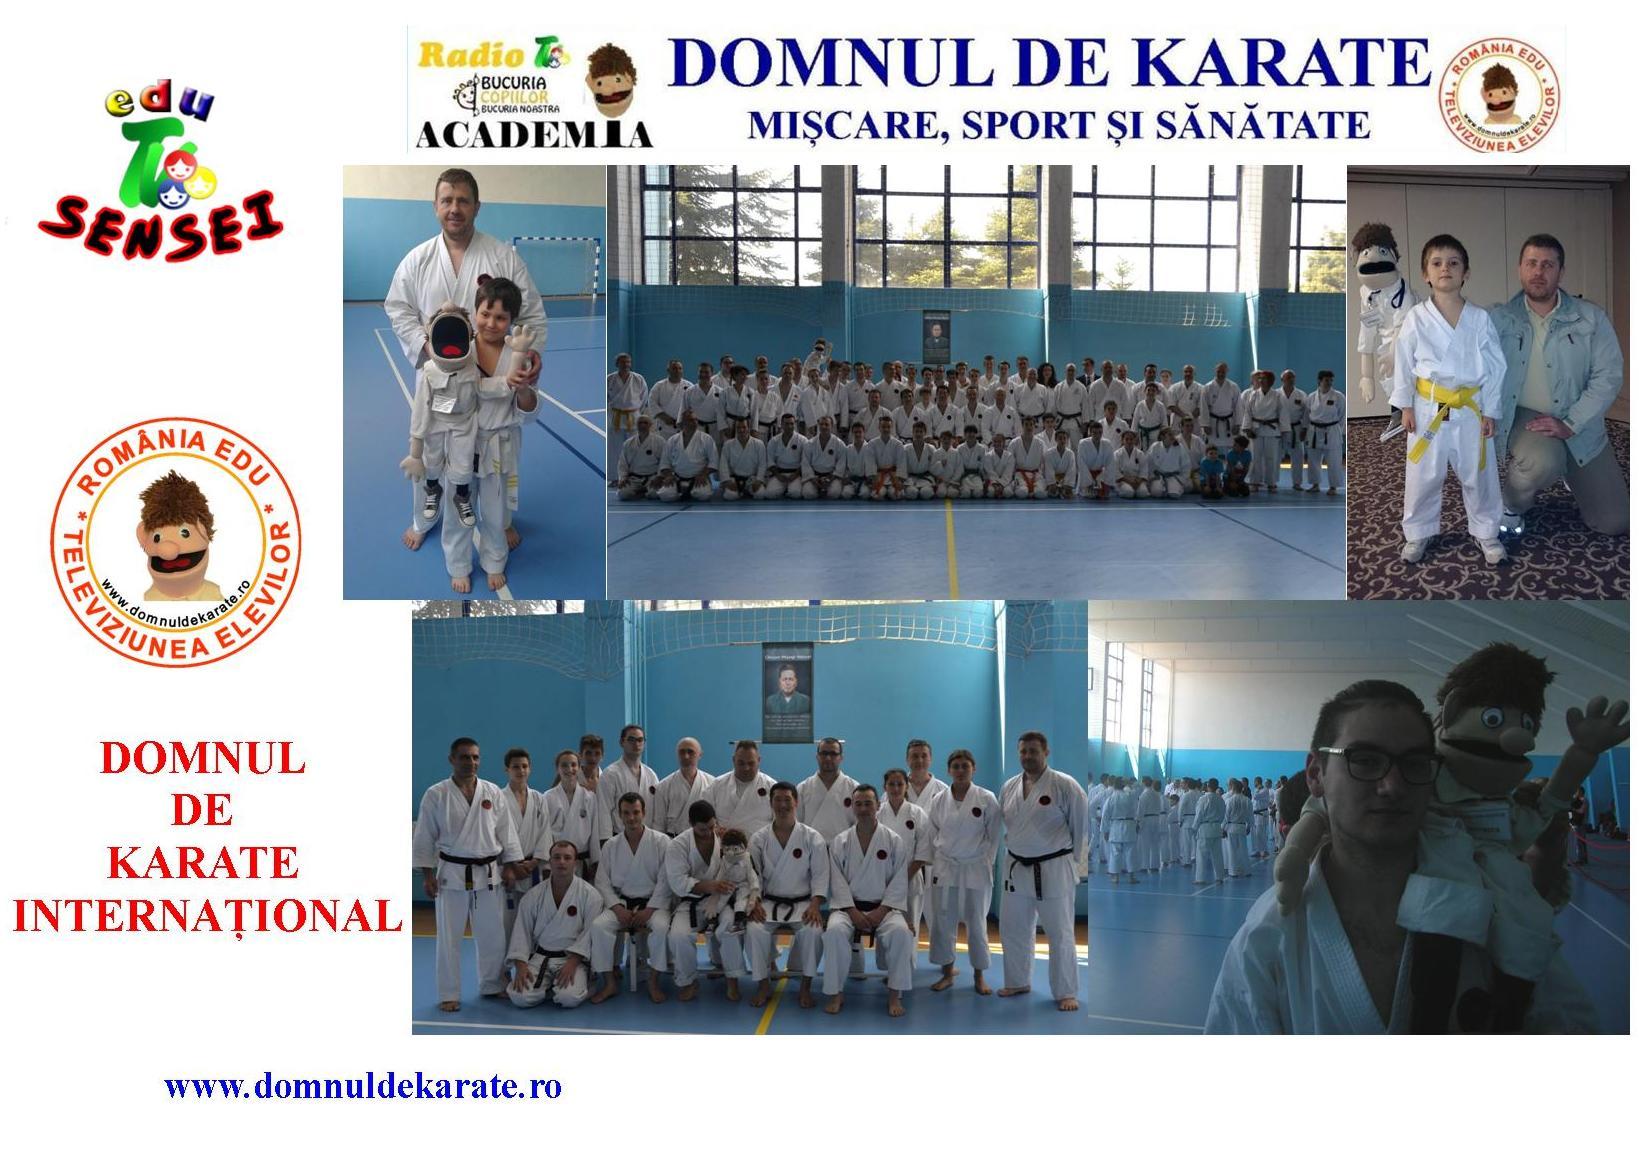 Domnul de karate INTERNAȚIONAL